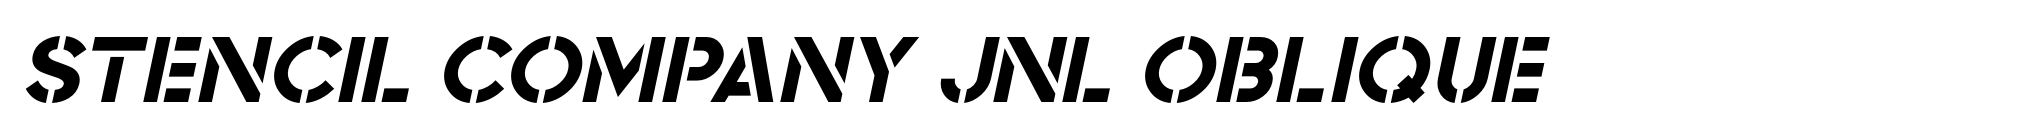 Stencil Company JNL Oblique image